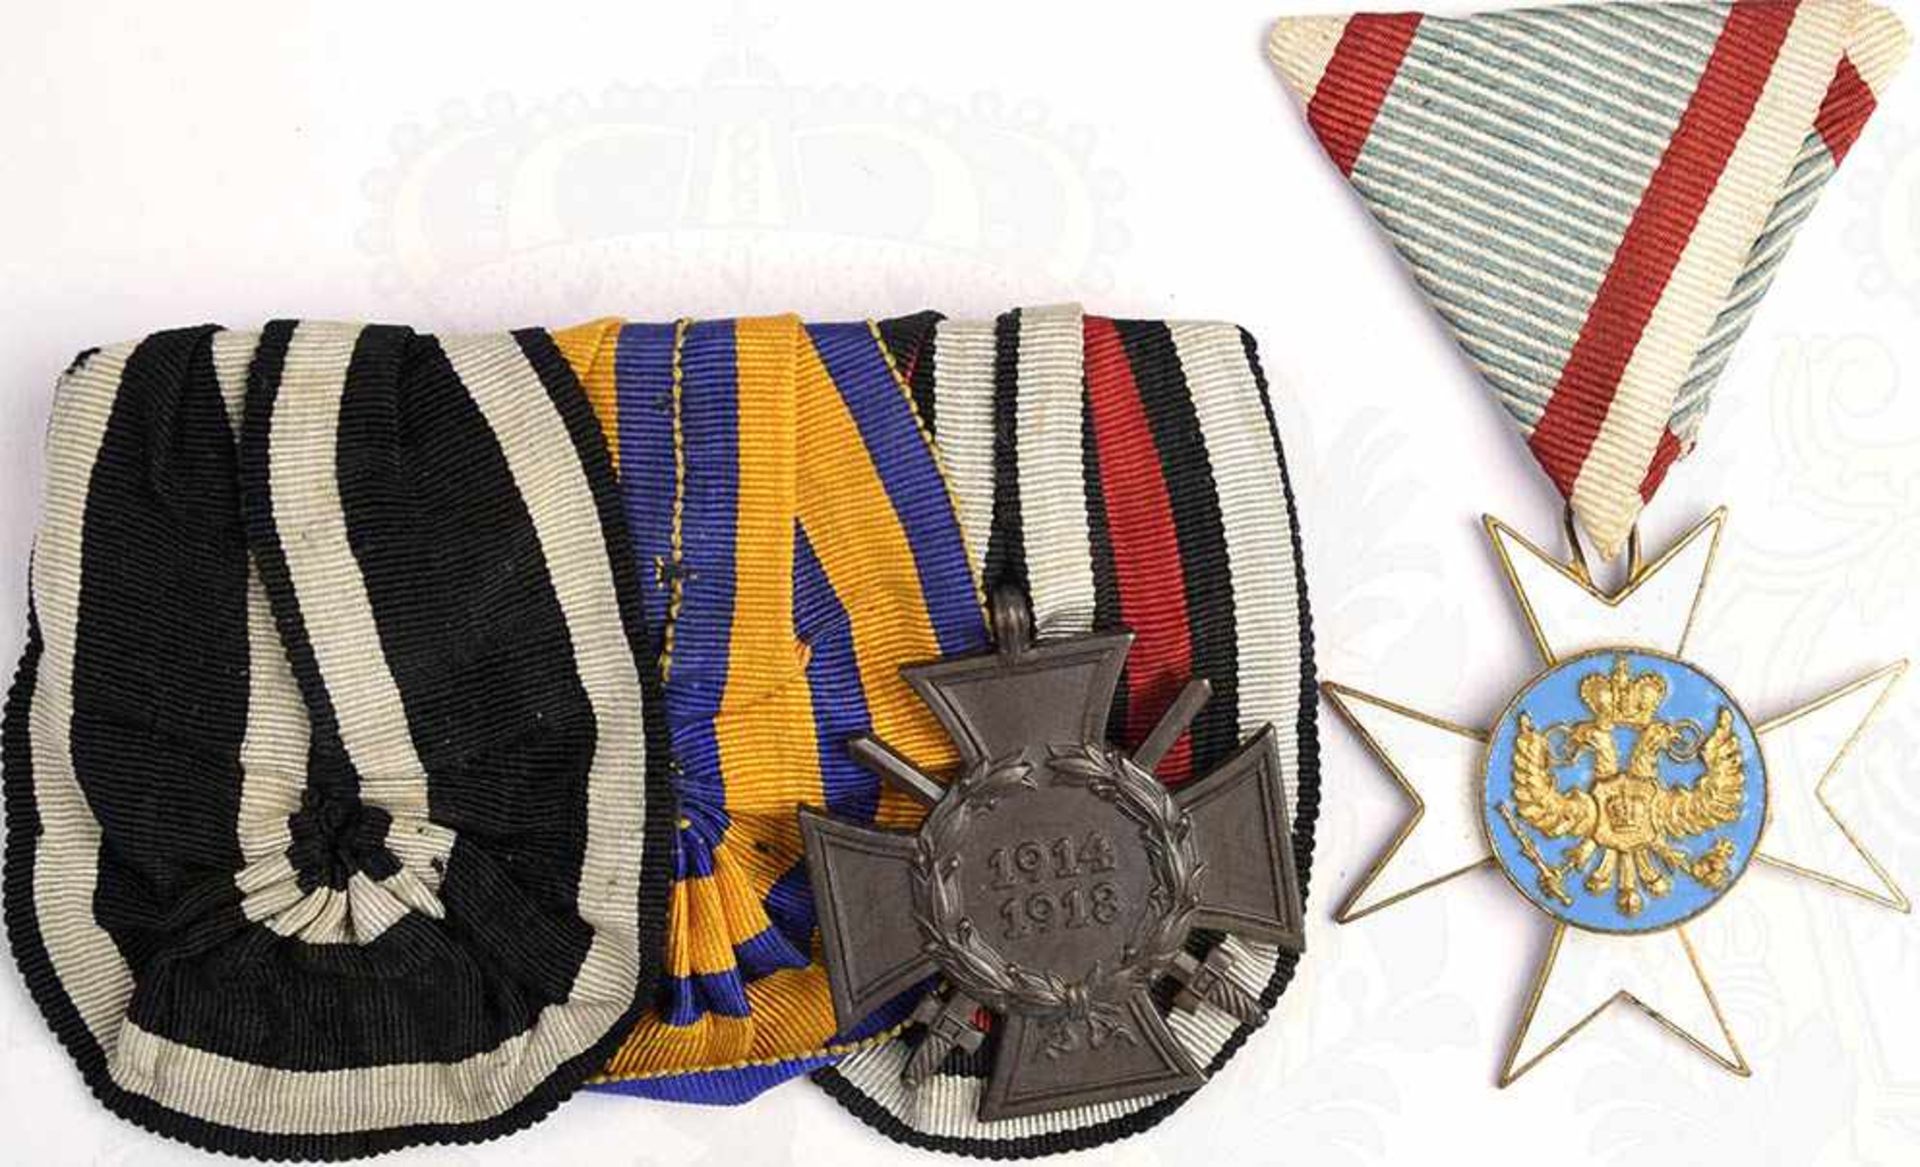 GROßE ORDENSPANGE, EK II 1914/Schwarzburg. Silb. Medaille Verdienst im Kriege, bde. Auszeichnungen